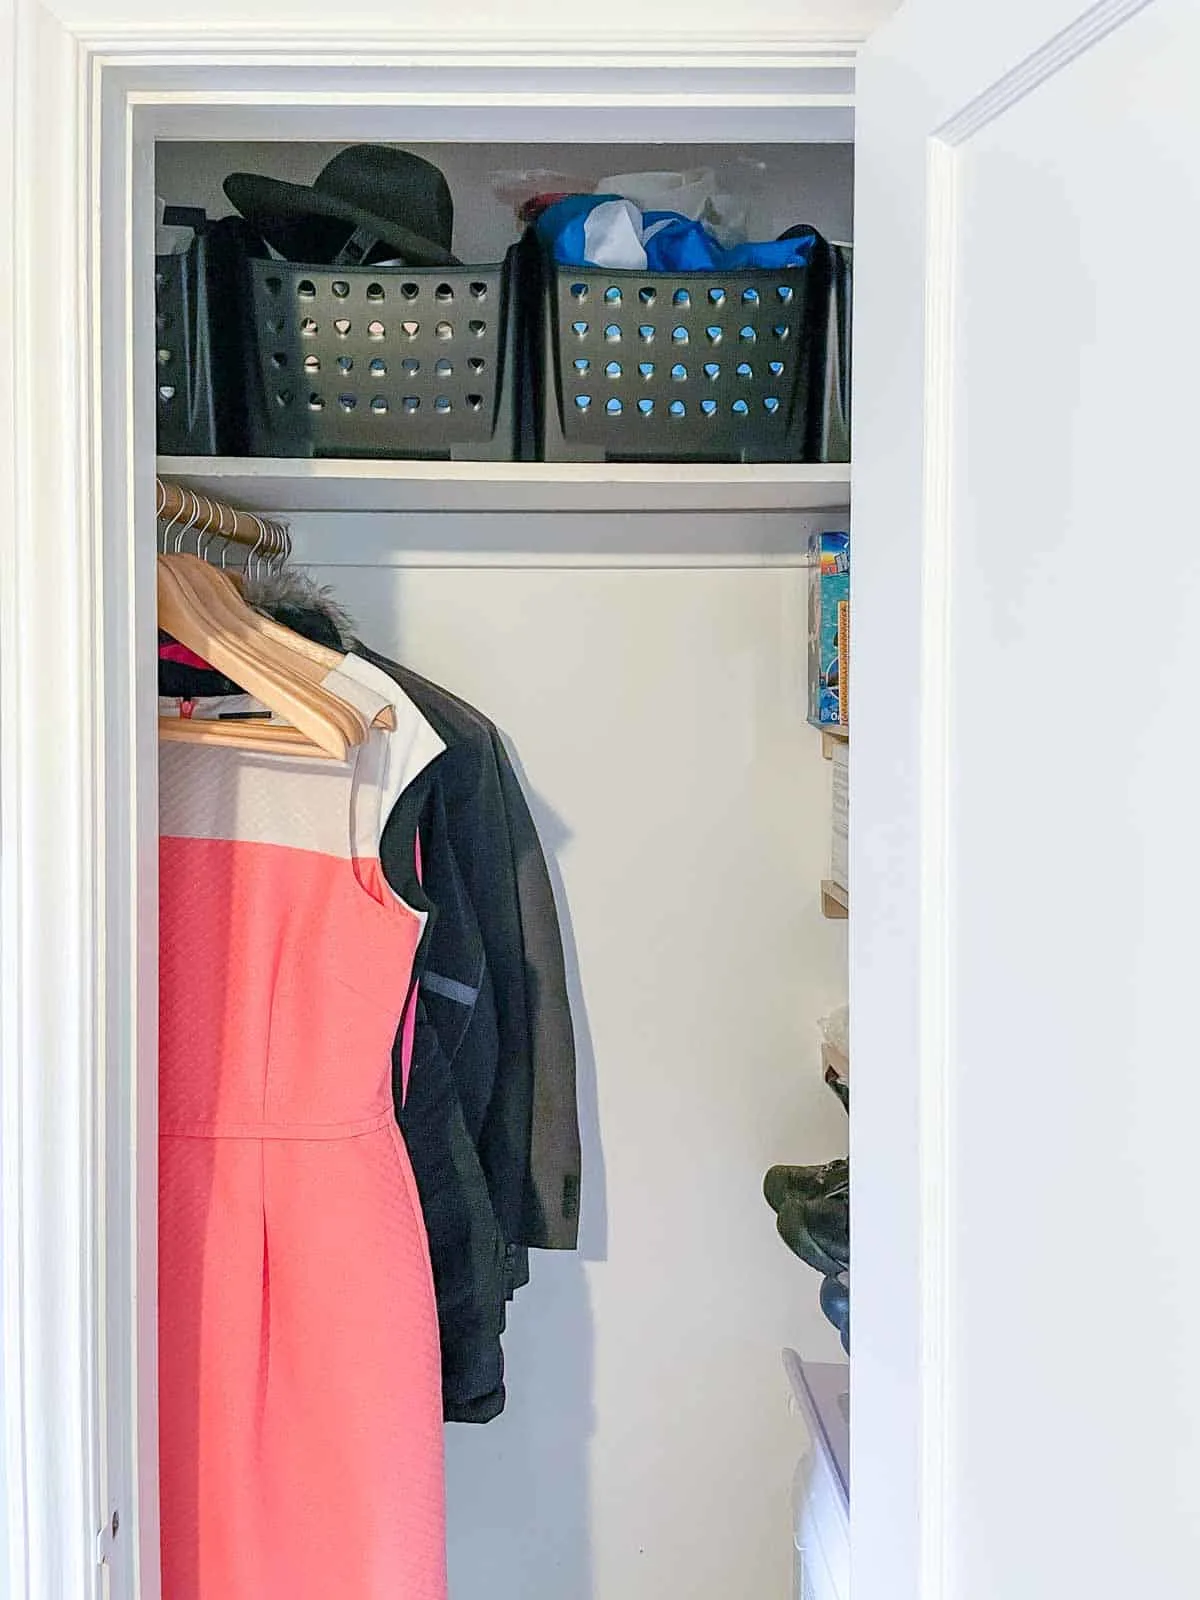 How to build a DIY floating closet organizer